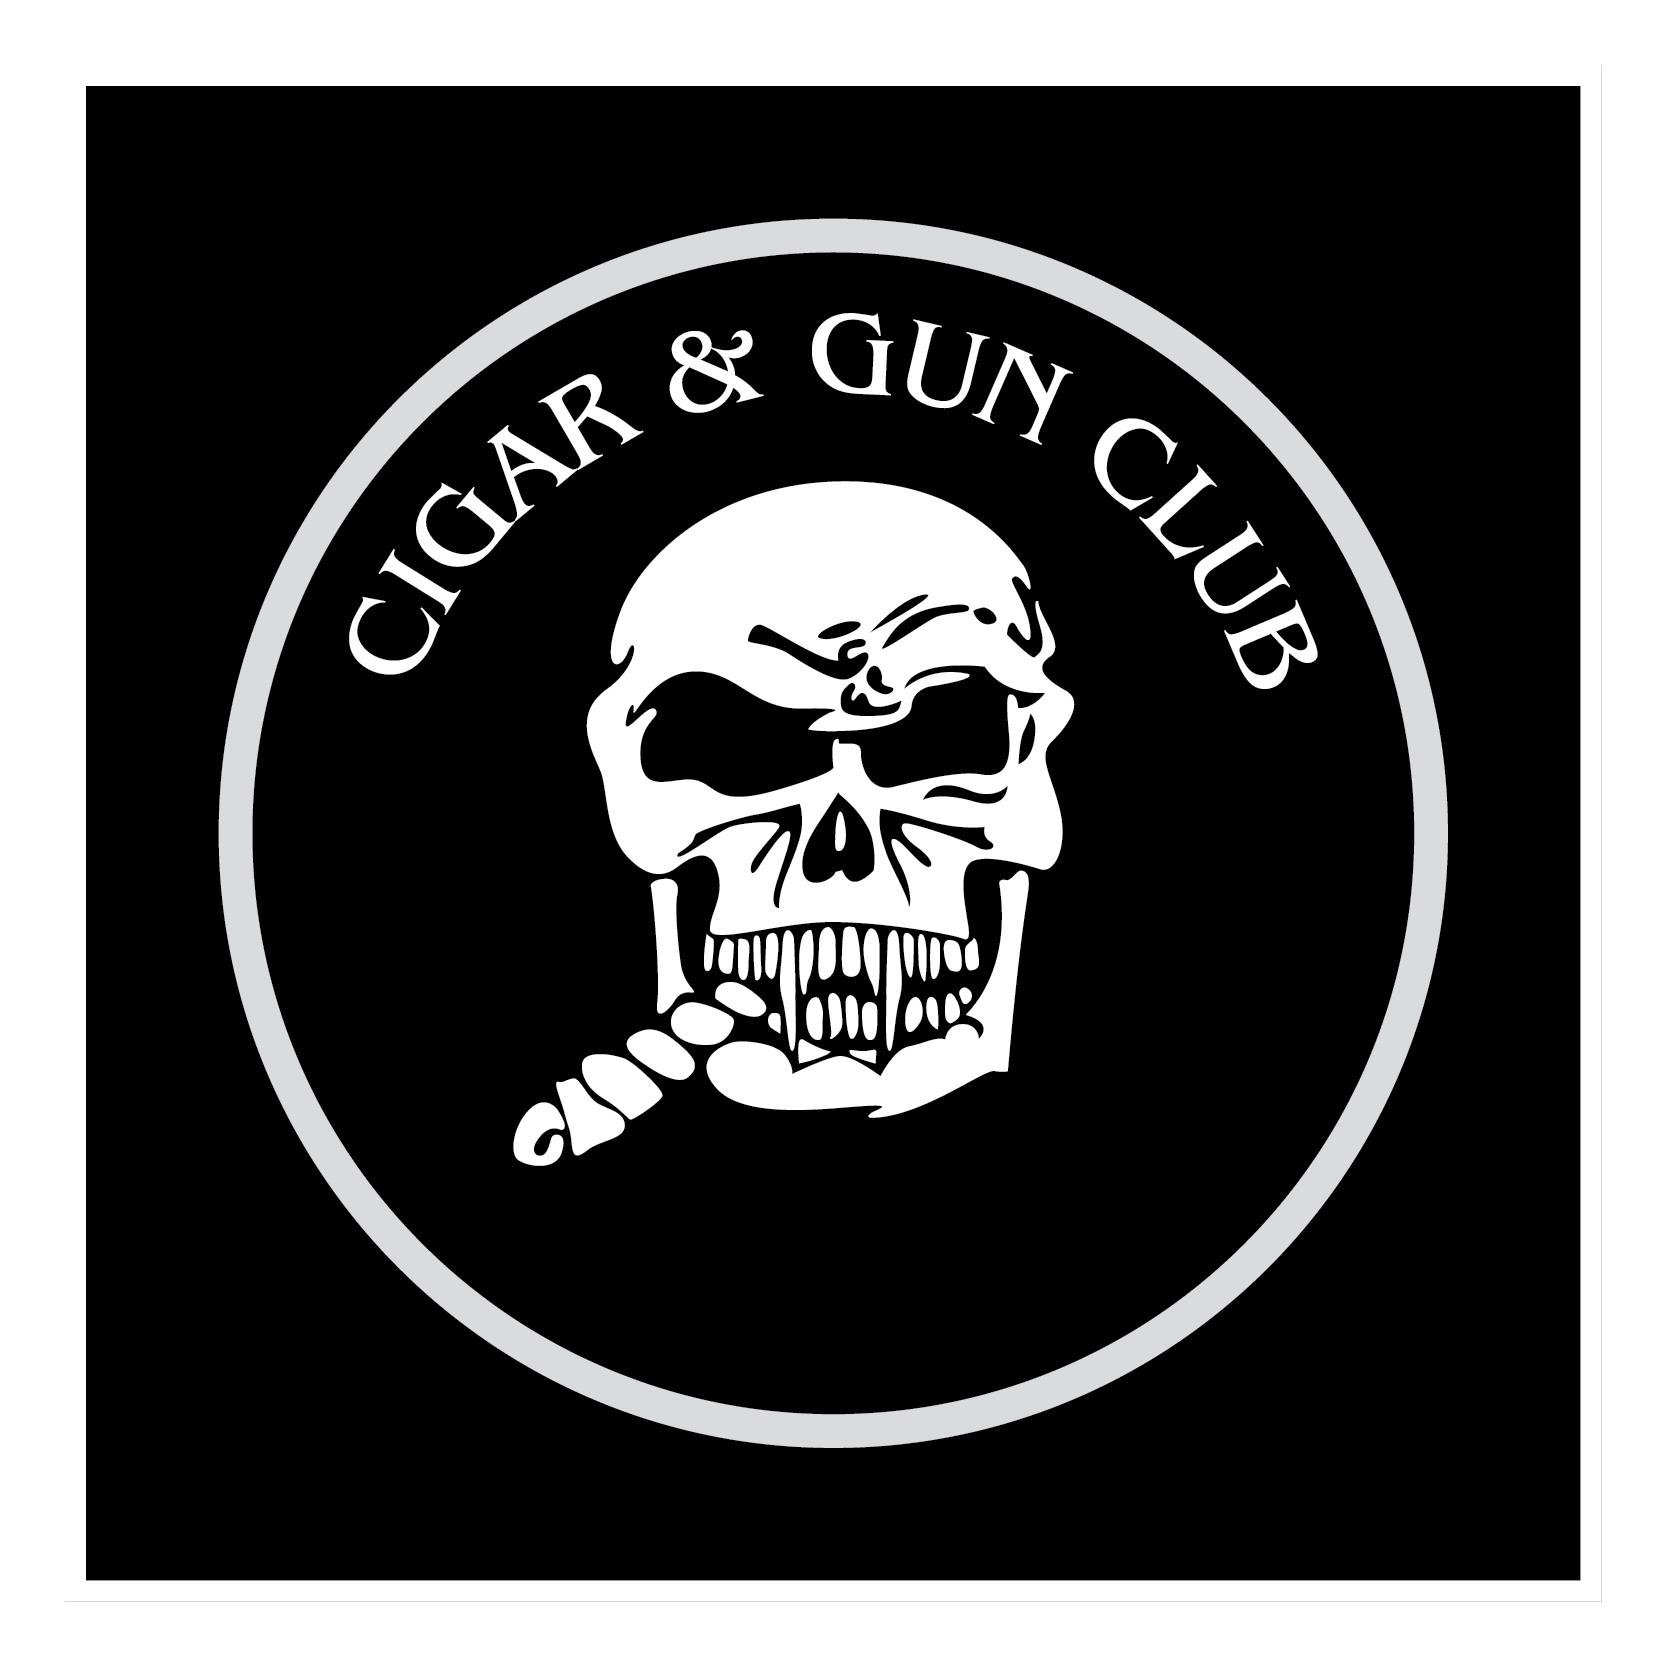 Cigar & Gun Club